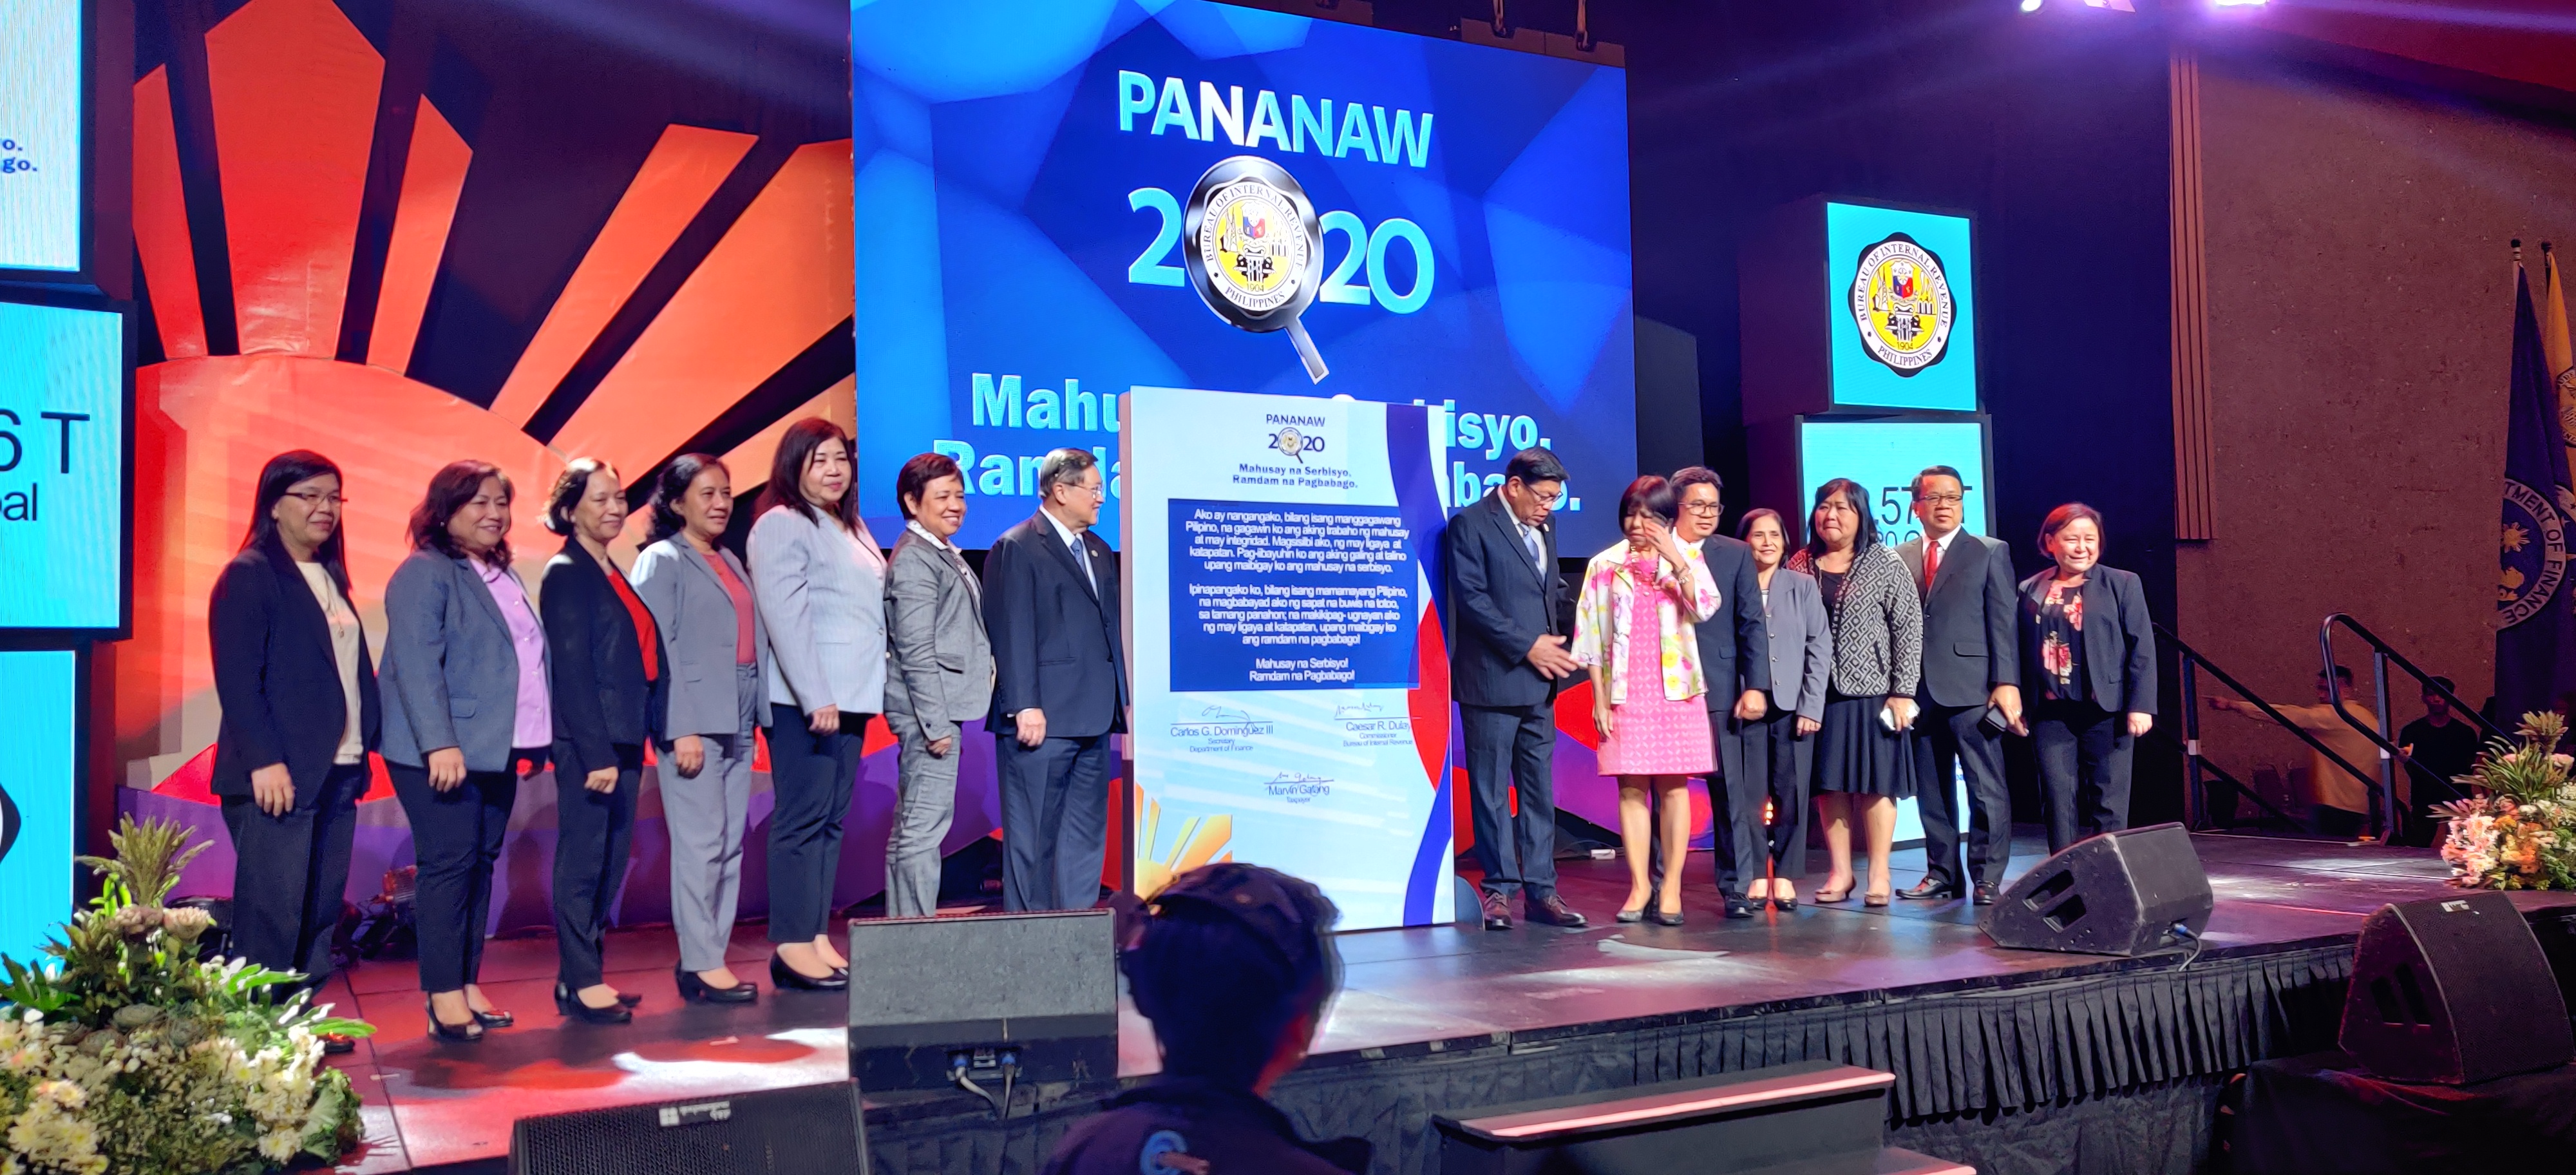 Ladies and Gentlemen of BIR in Pananaw 2020